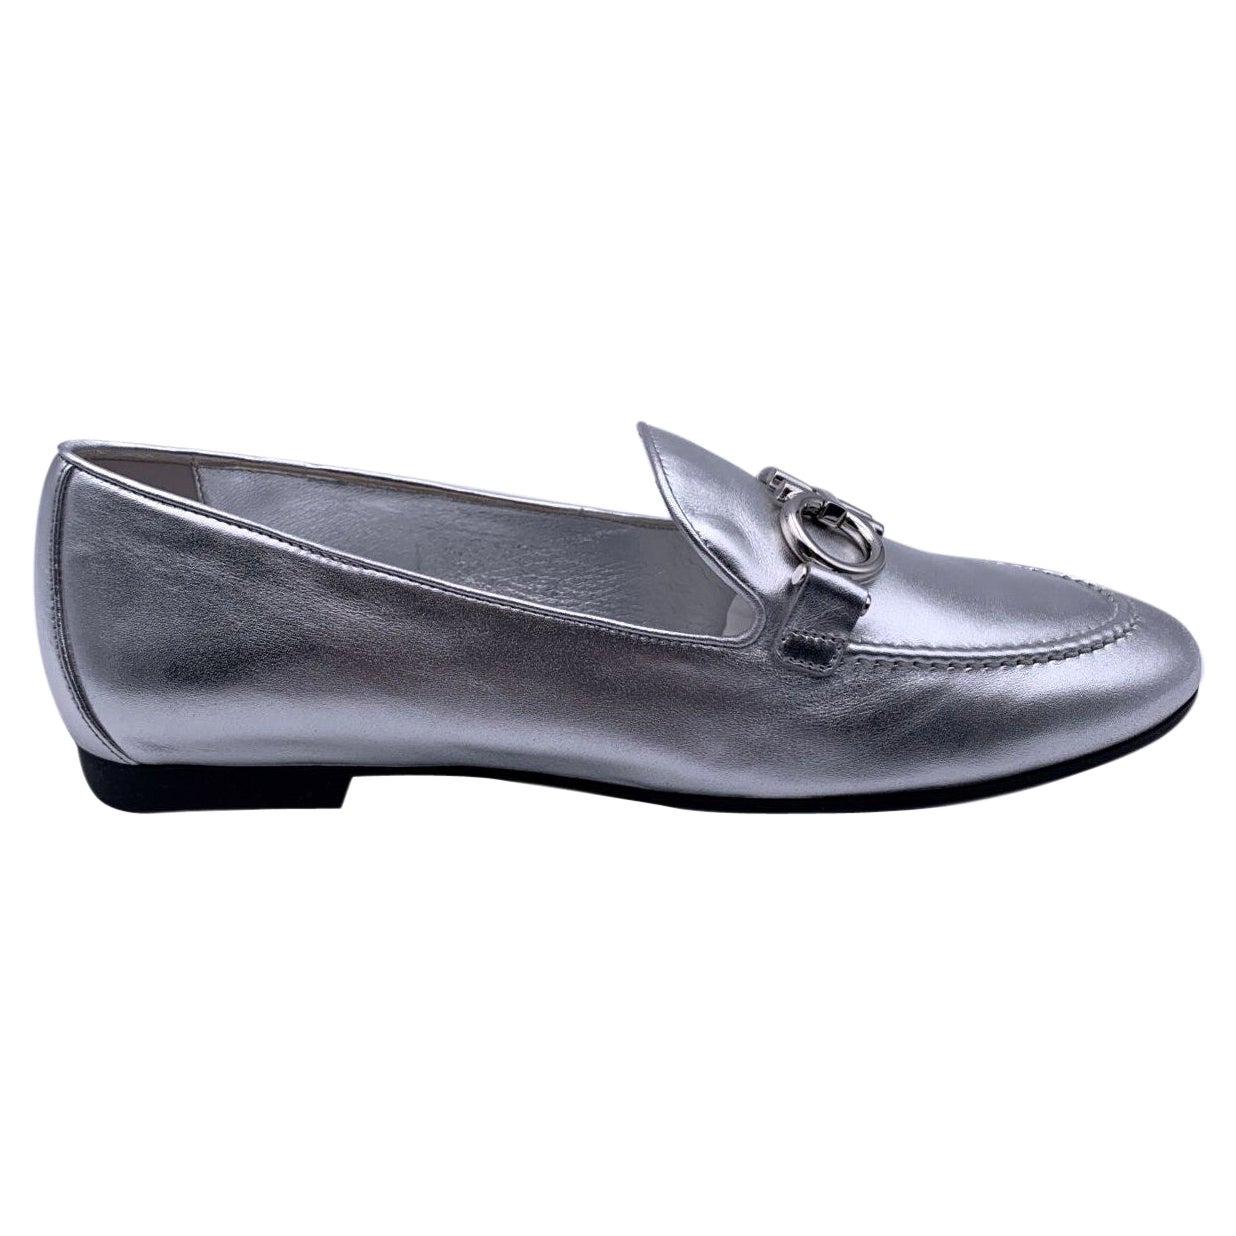 Salvatore Ferragamo Silver Leather Trifoglio Loafers Size 7C 37.5C